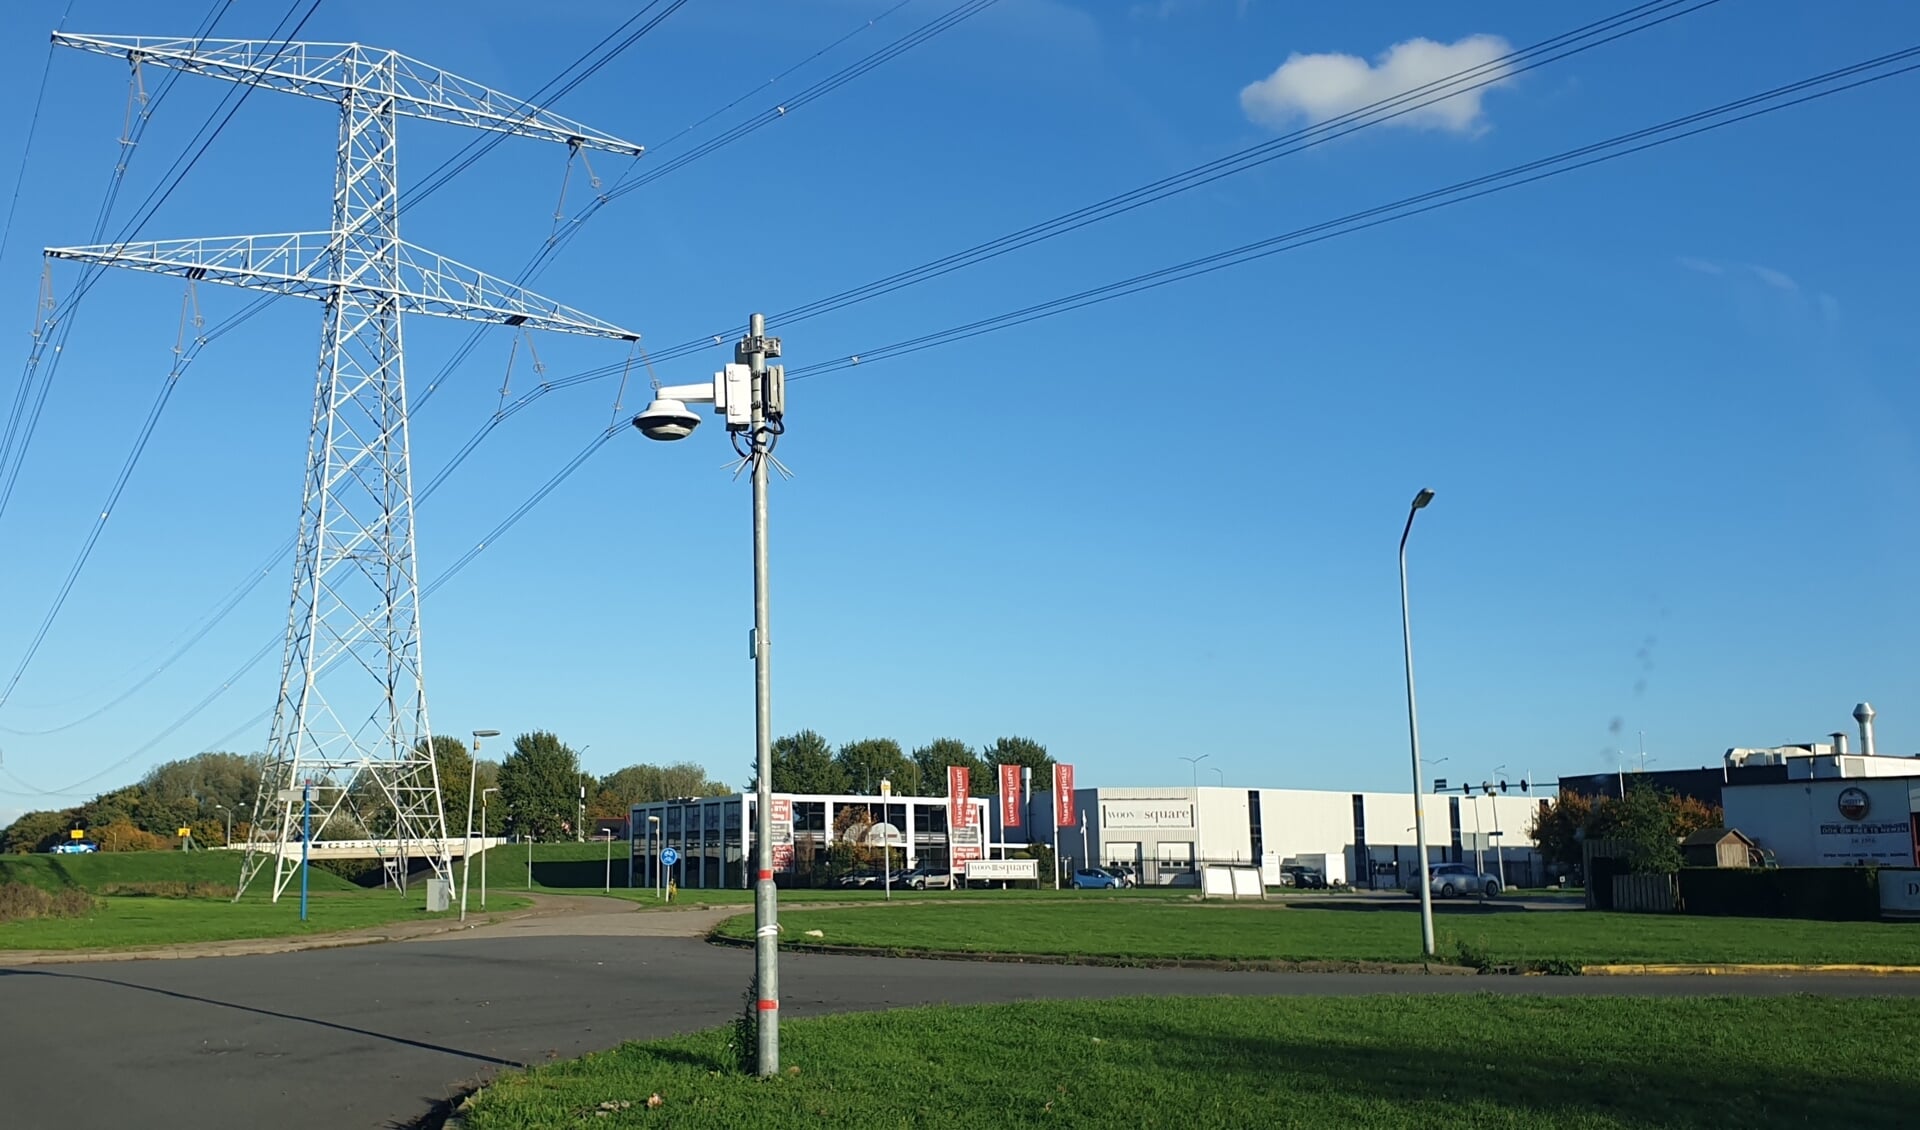 Op dit moment staan er 80 camera’s met 24/7 beeldopname op de Almeerse bedrijventerreinen. (Foto: Almere Zaken)